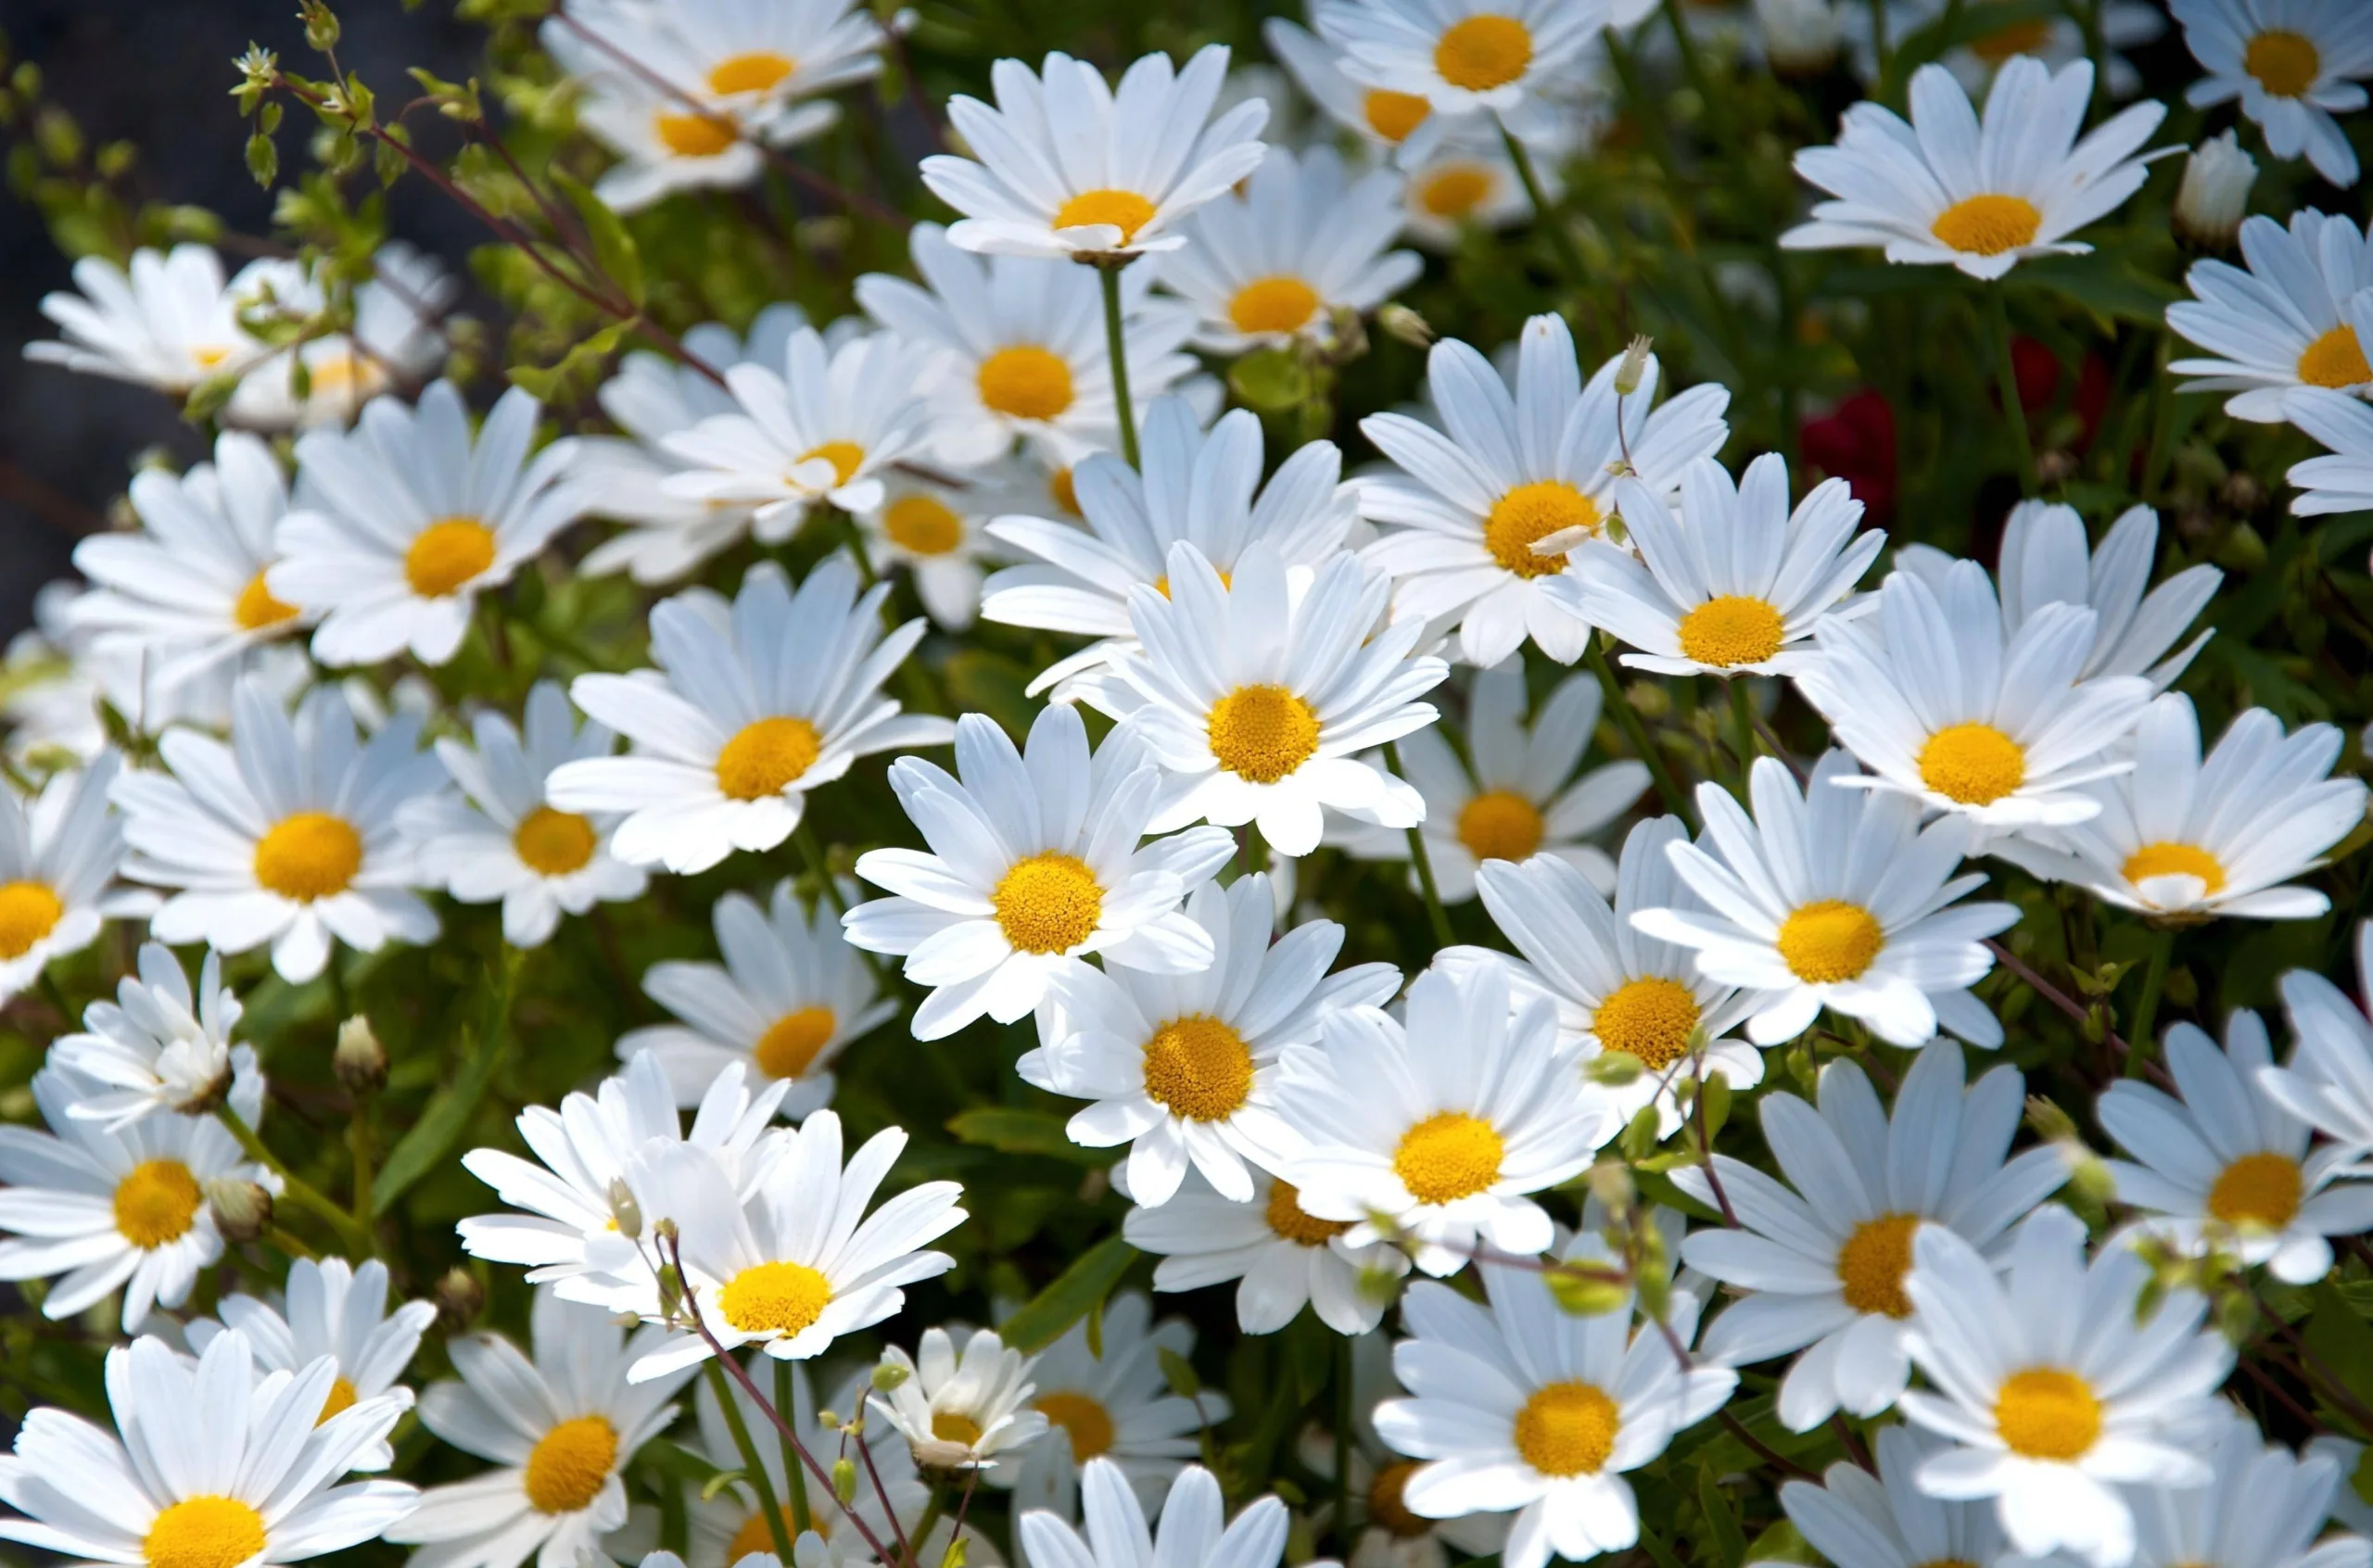 Ngắm nhìn 88 hình ảnh hoa cúc trắng trên nền đen siêu đẹp